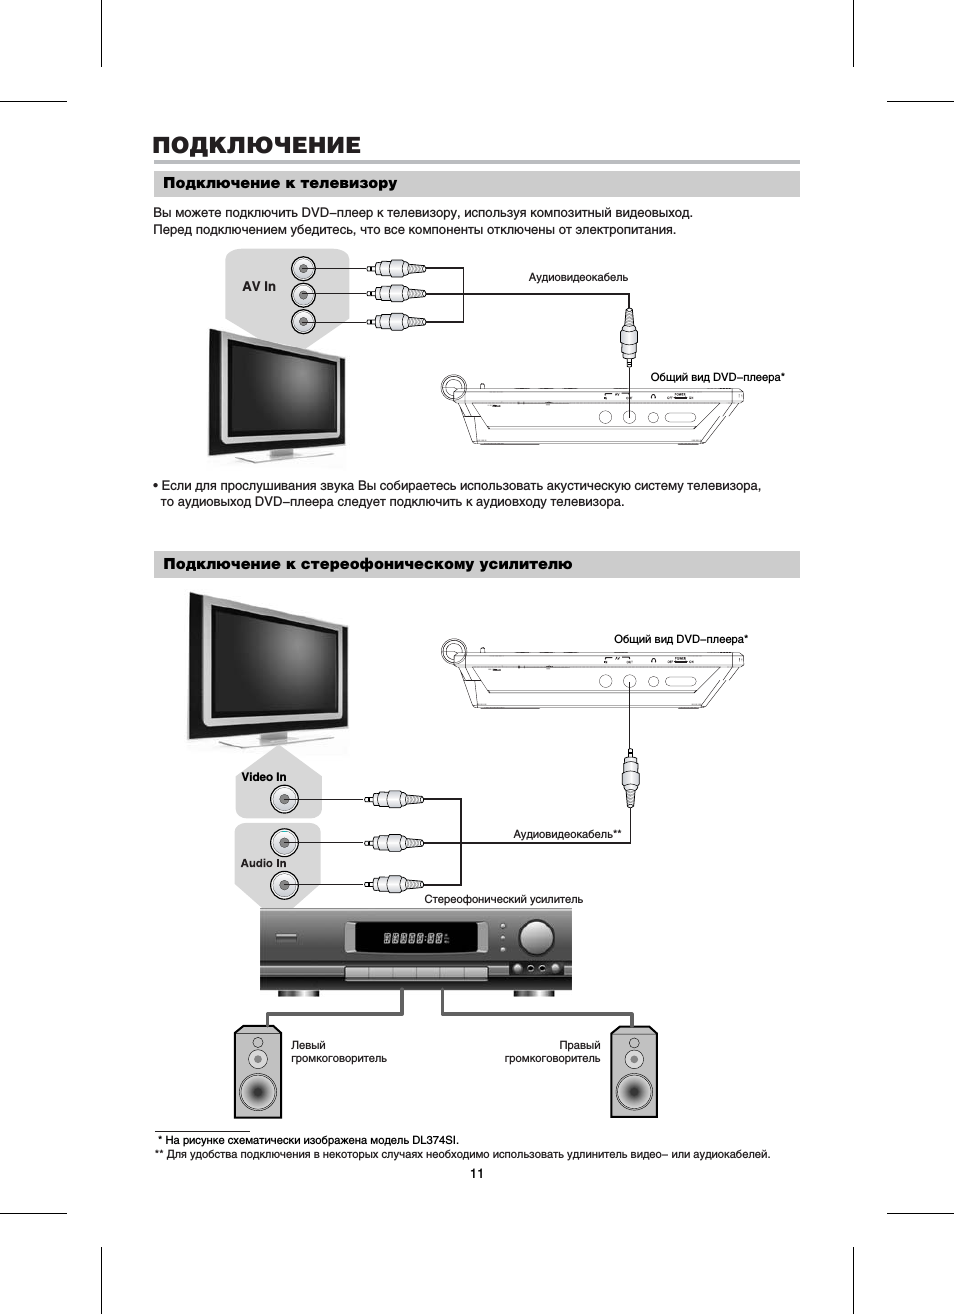 Как подключить караоке к телевизору — пошаговая инструкция и рекомендации